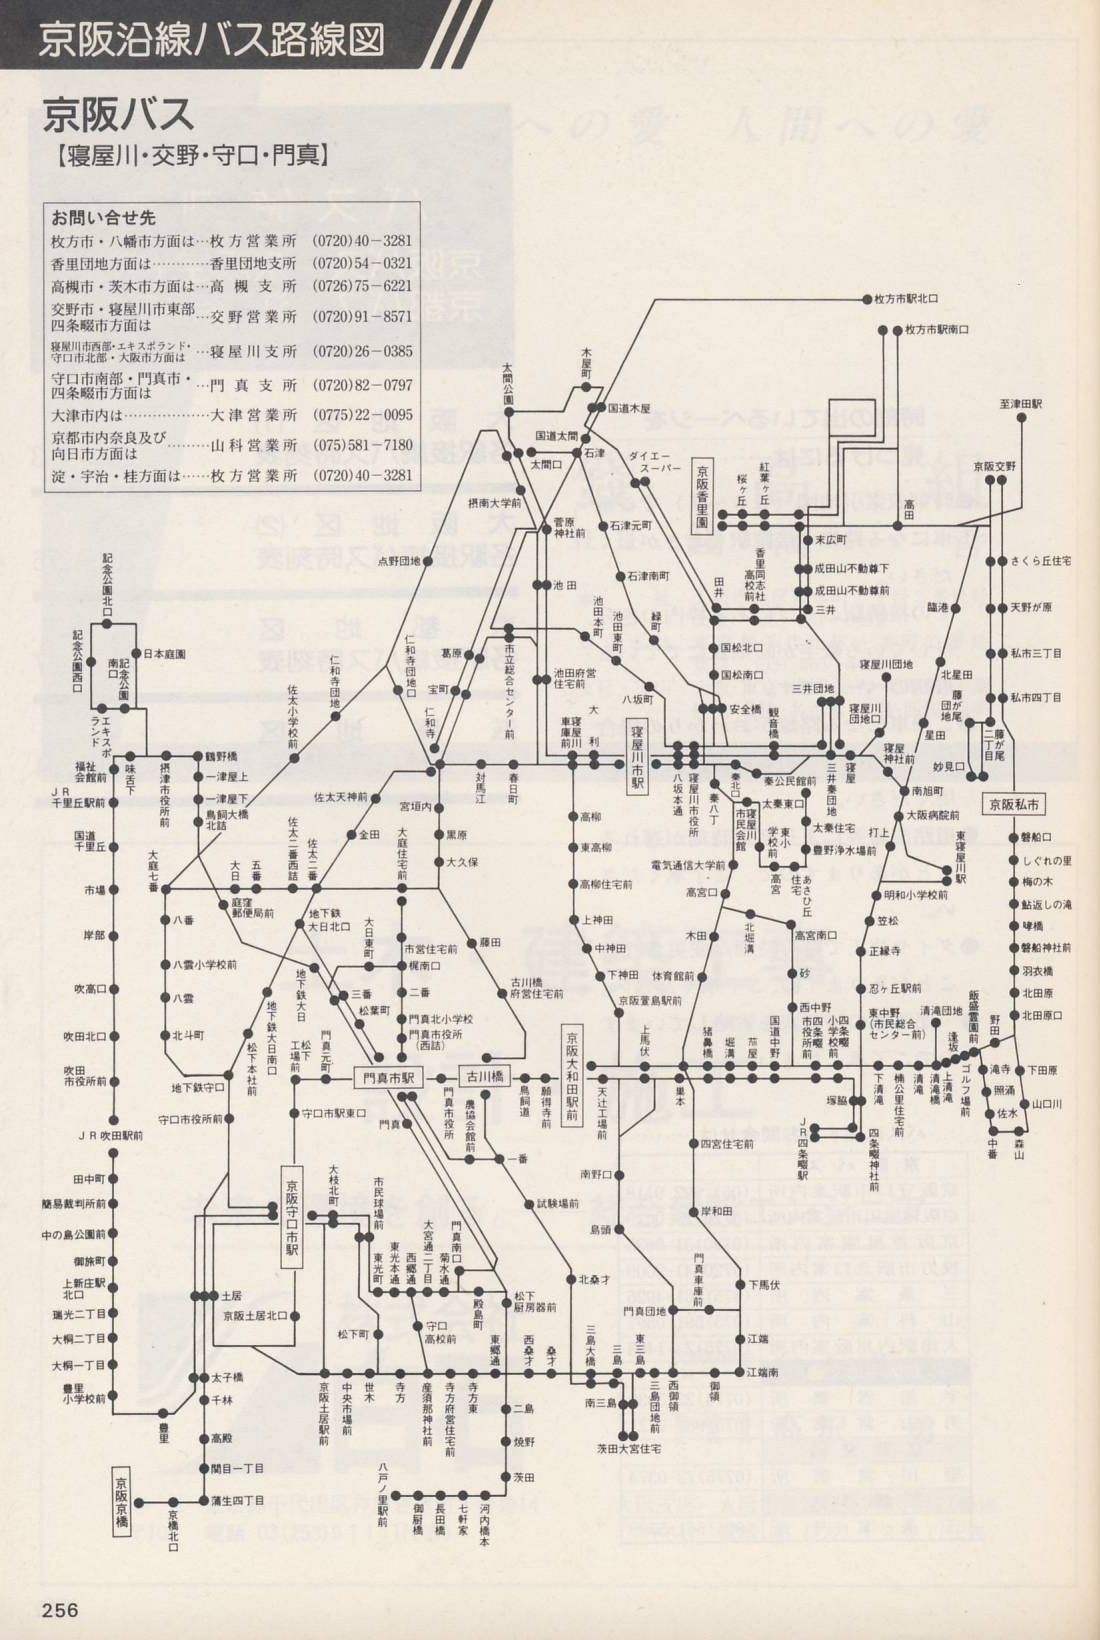 1987-06-01改正_京阪電気鉄道_冊子時刻表_256(京阪バス路線図)